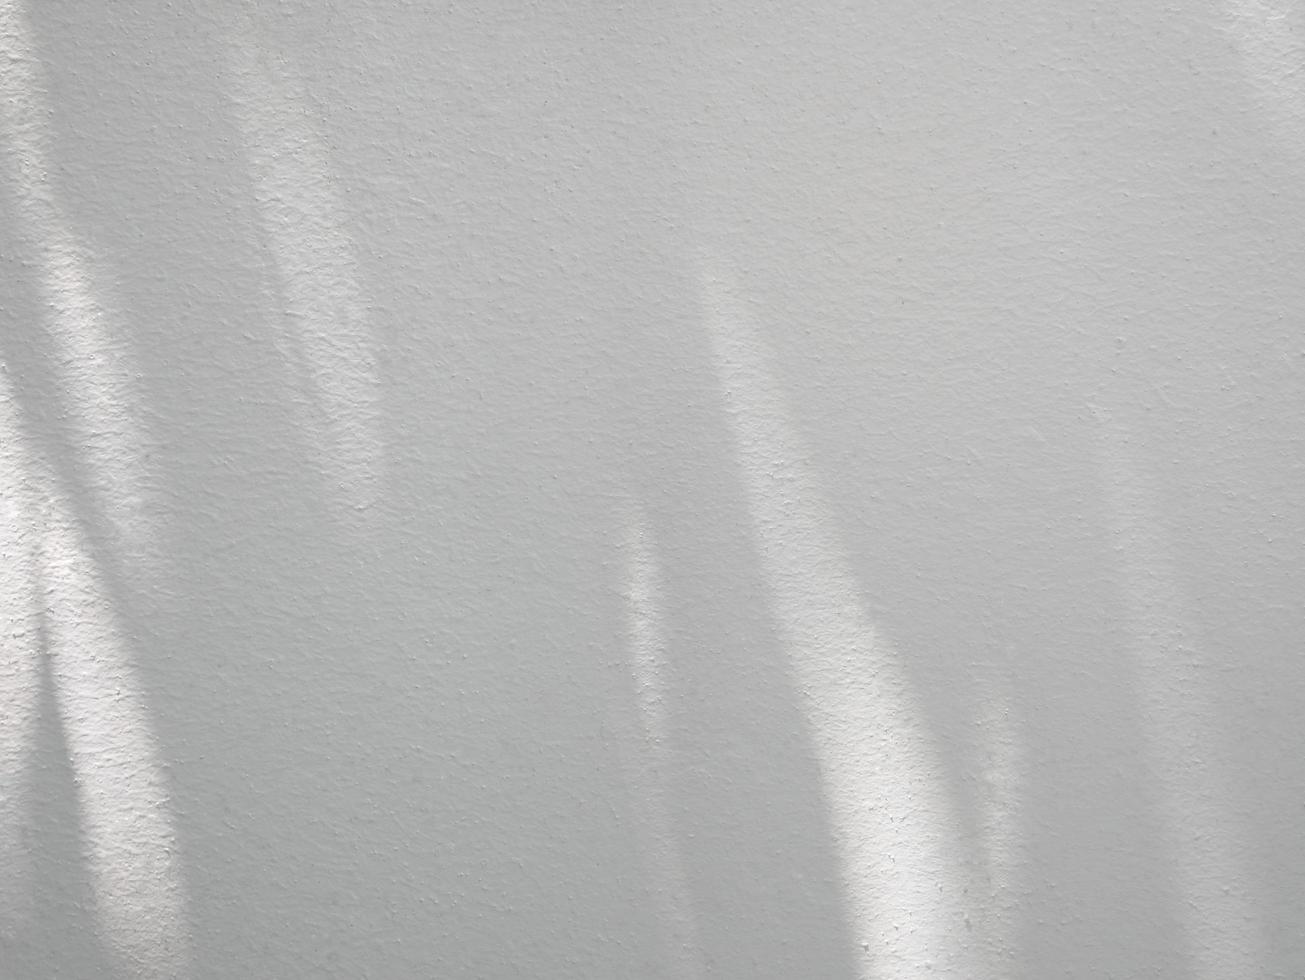 sombra abstrata de folhas no fundo da parede de concreto foto